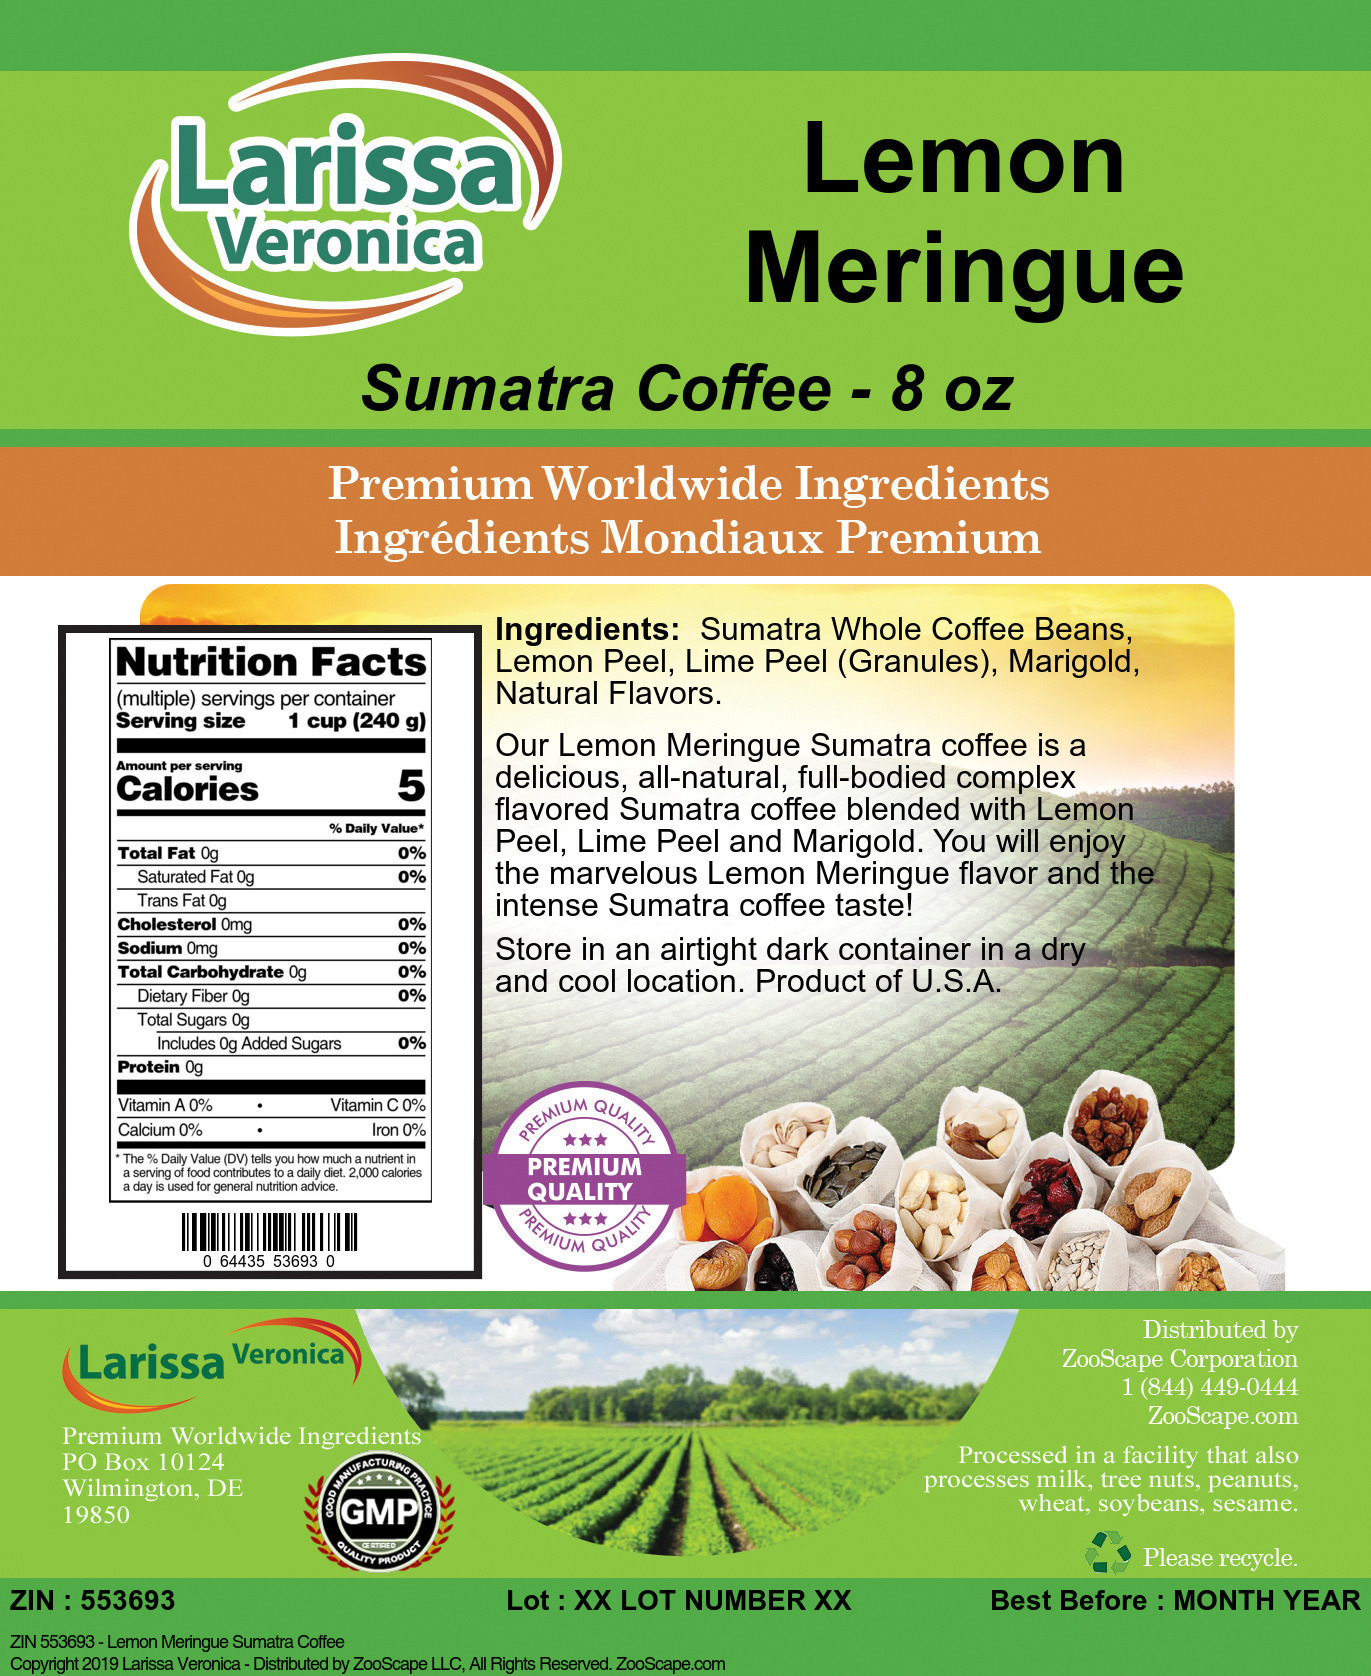 Lemon Meringue Sumatra Coffee - Label